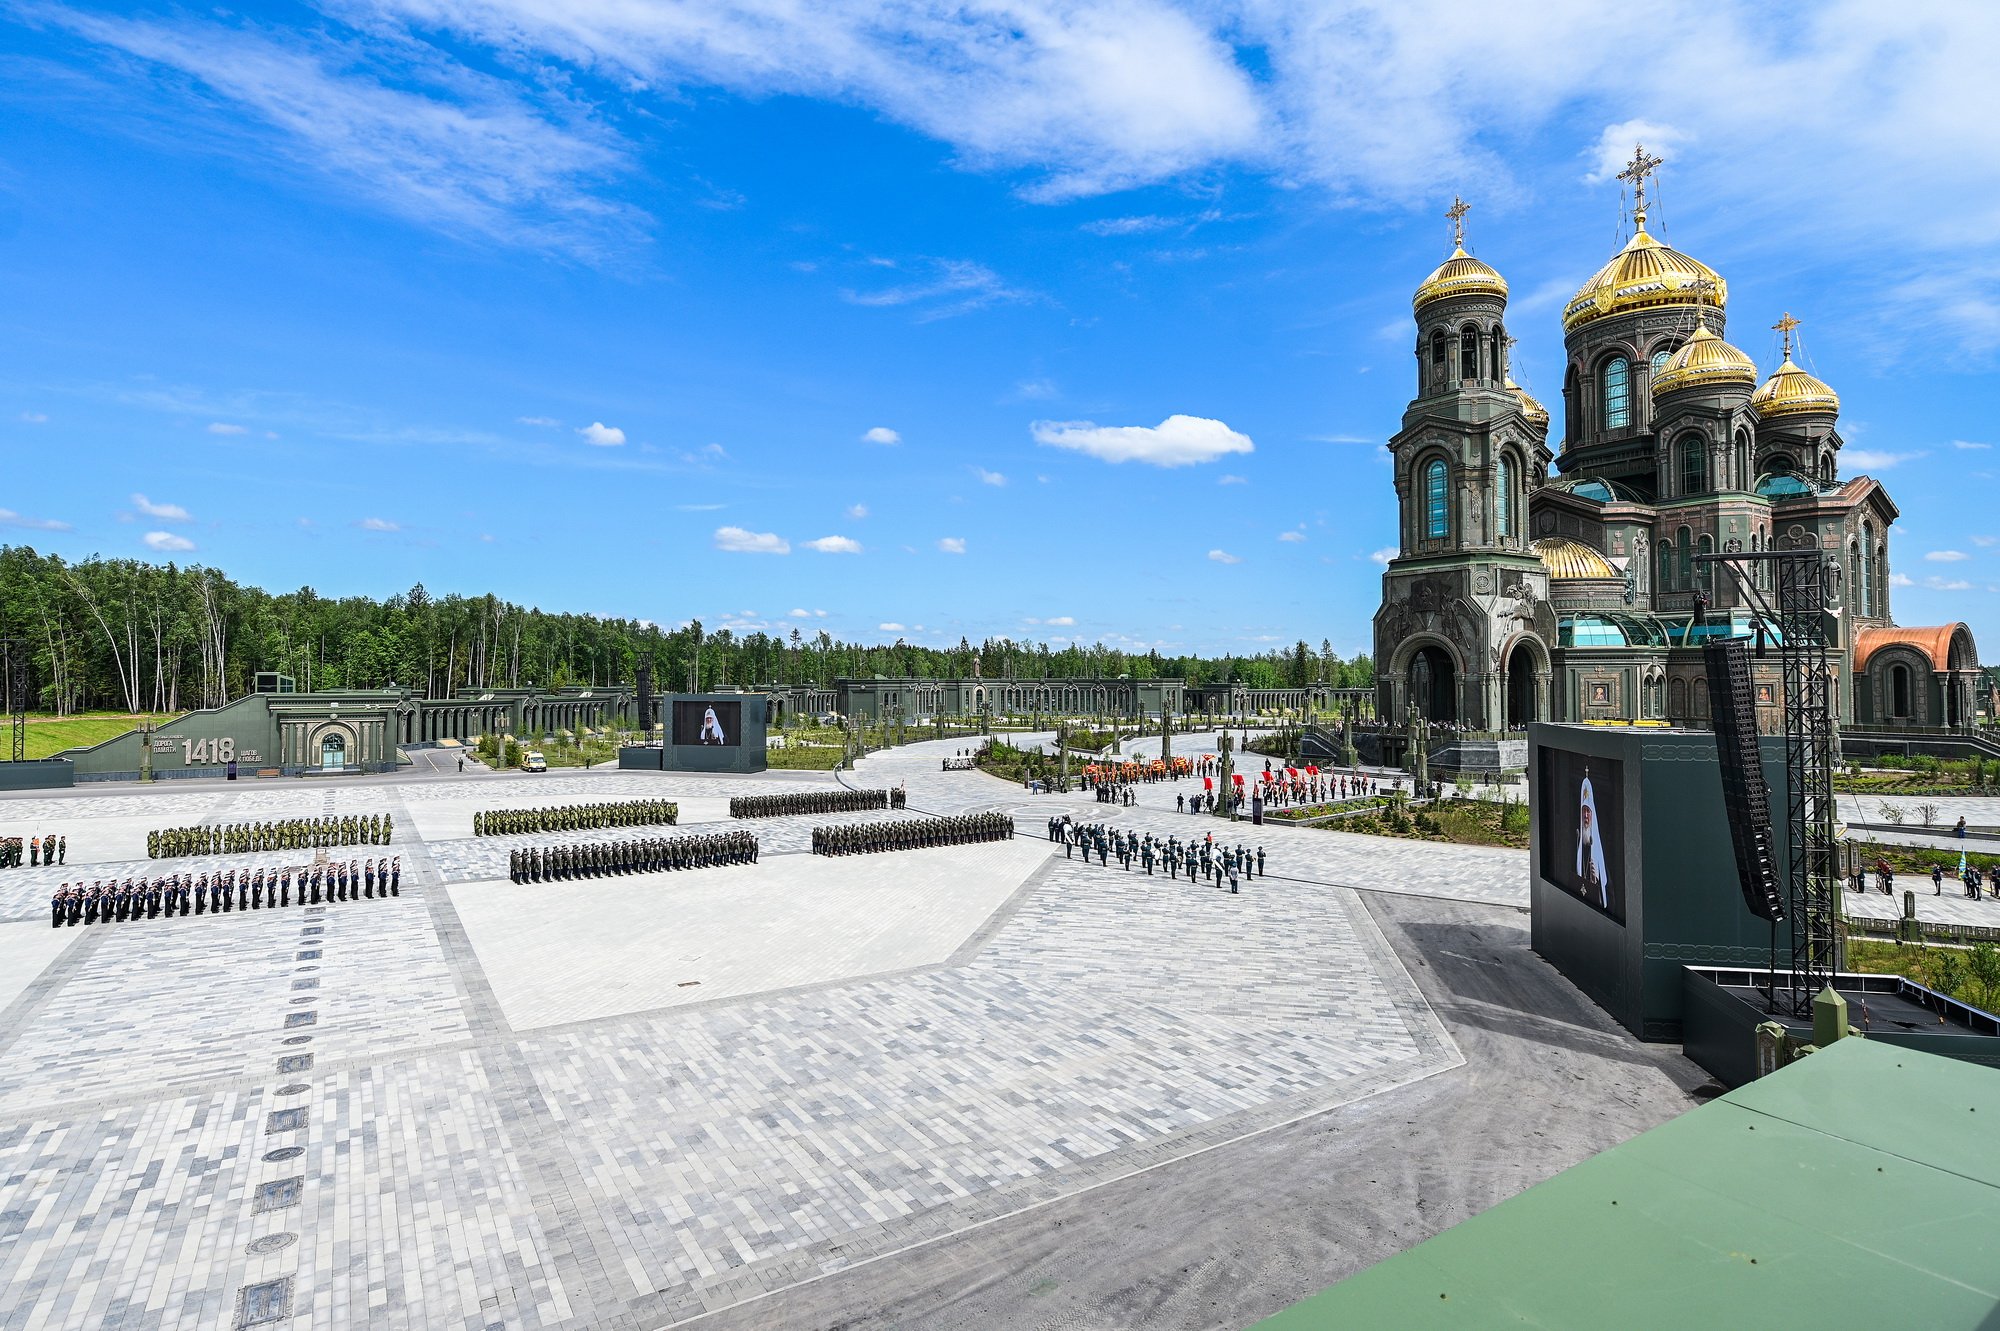 главный храм вооруженных сил россии вид сверху